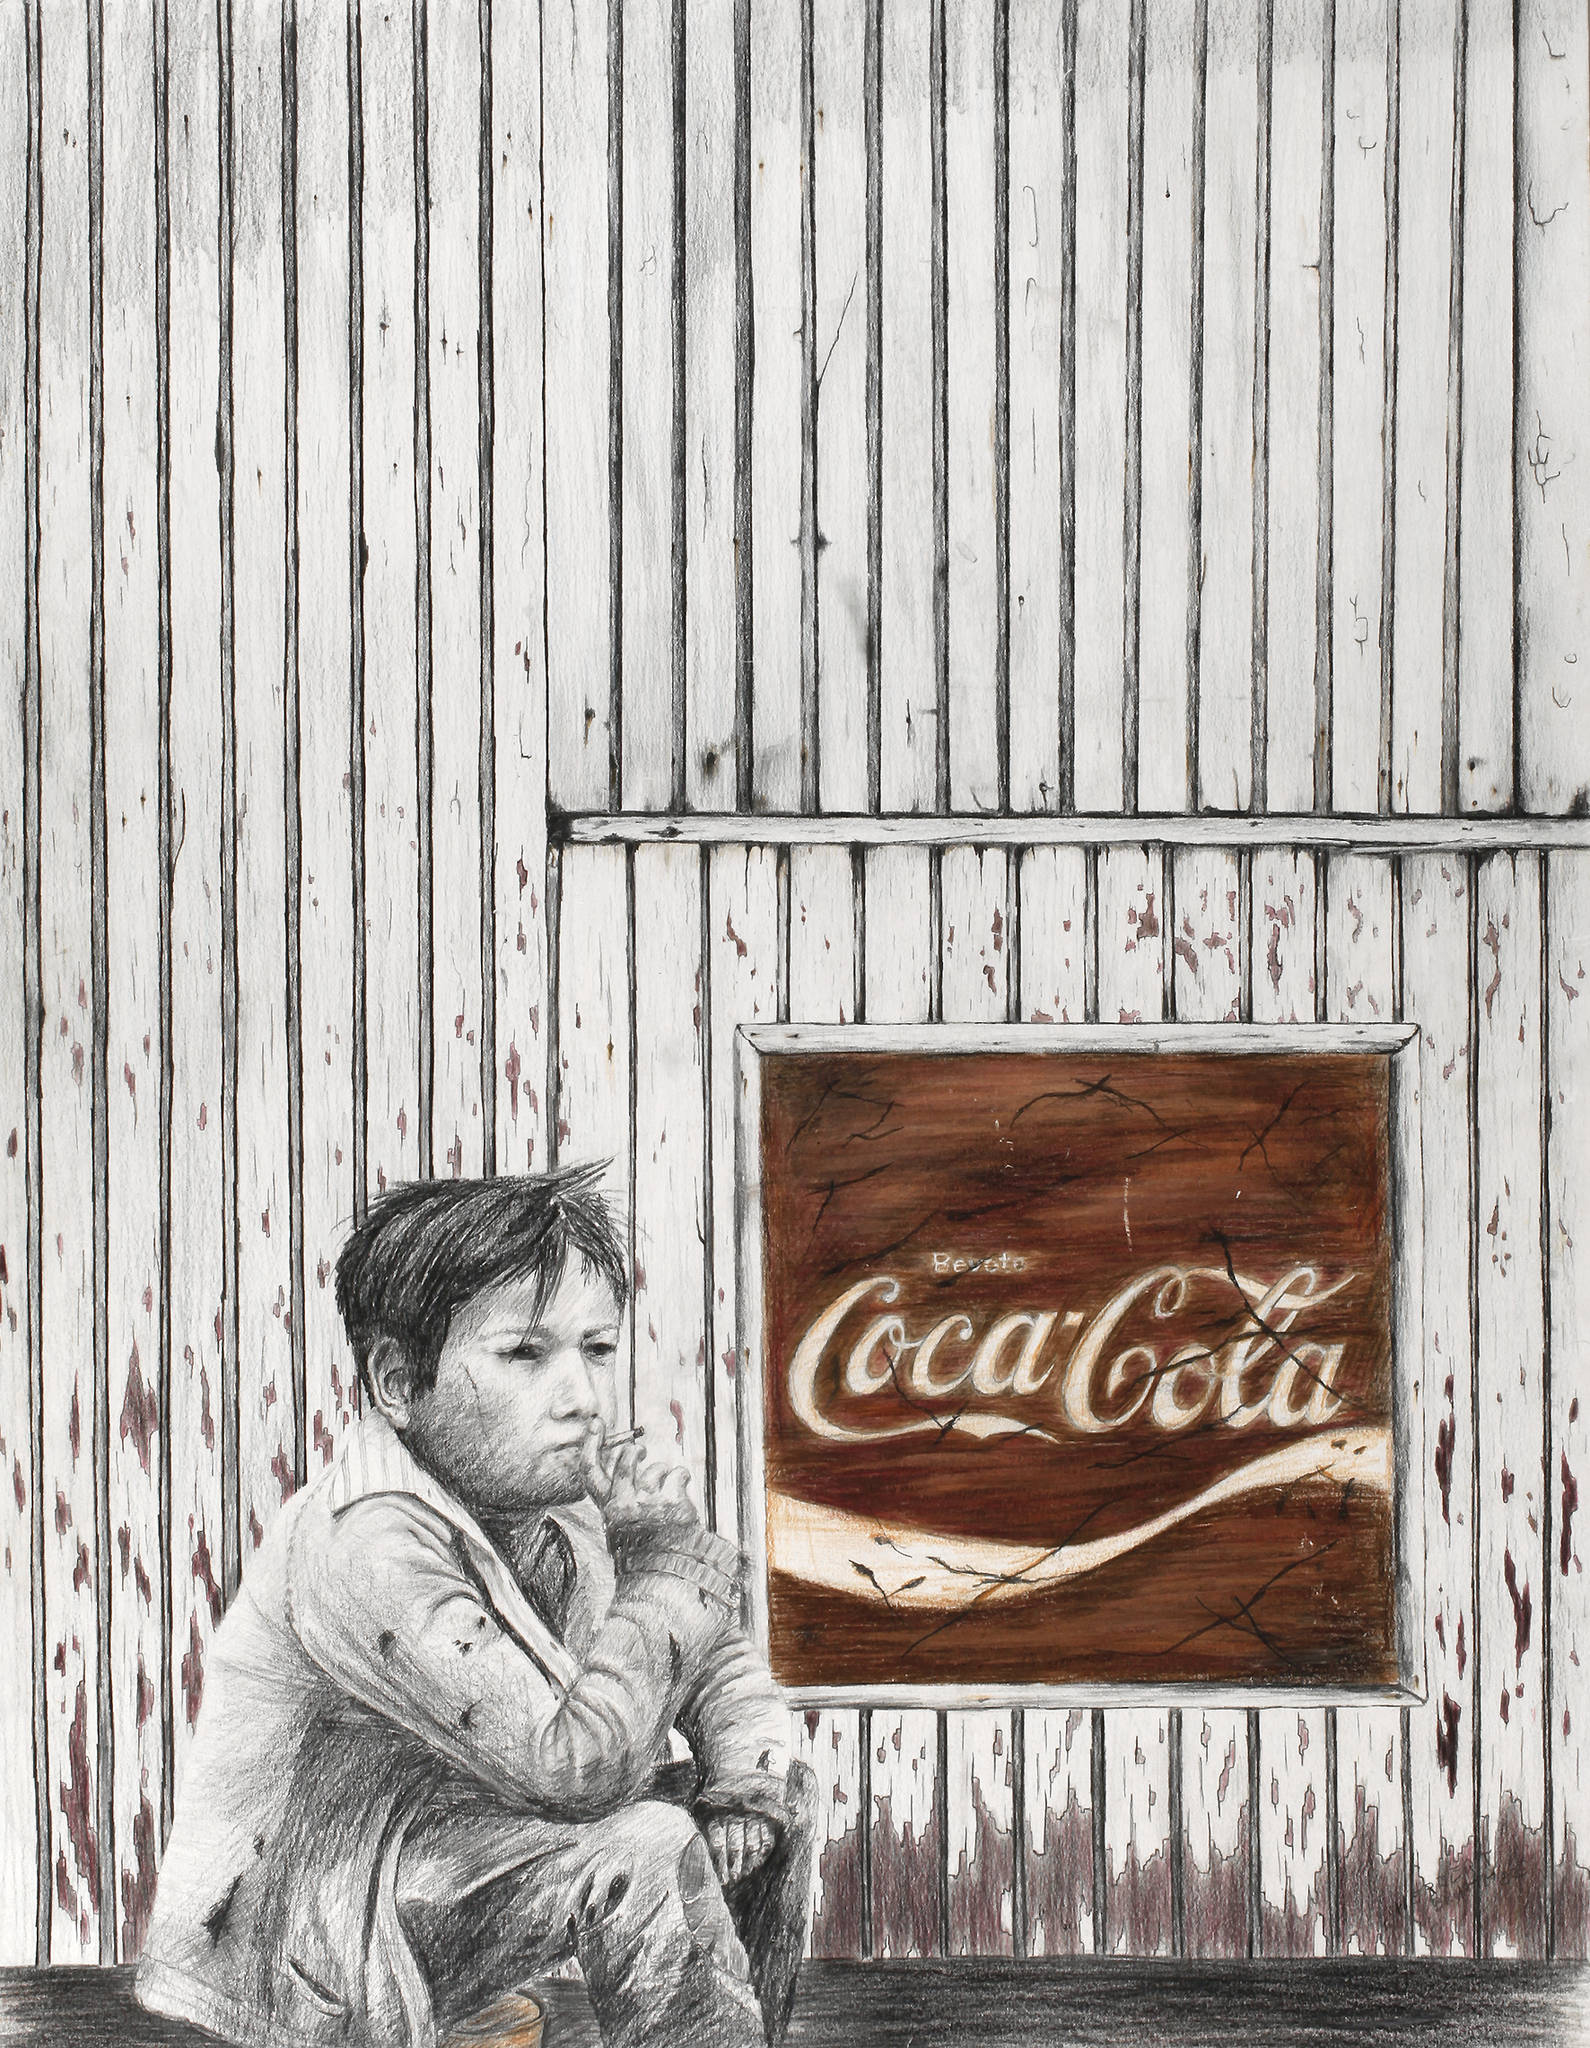 Herbert Brumm, ”Coca Cola”